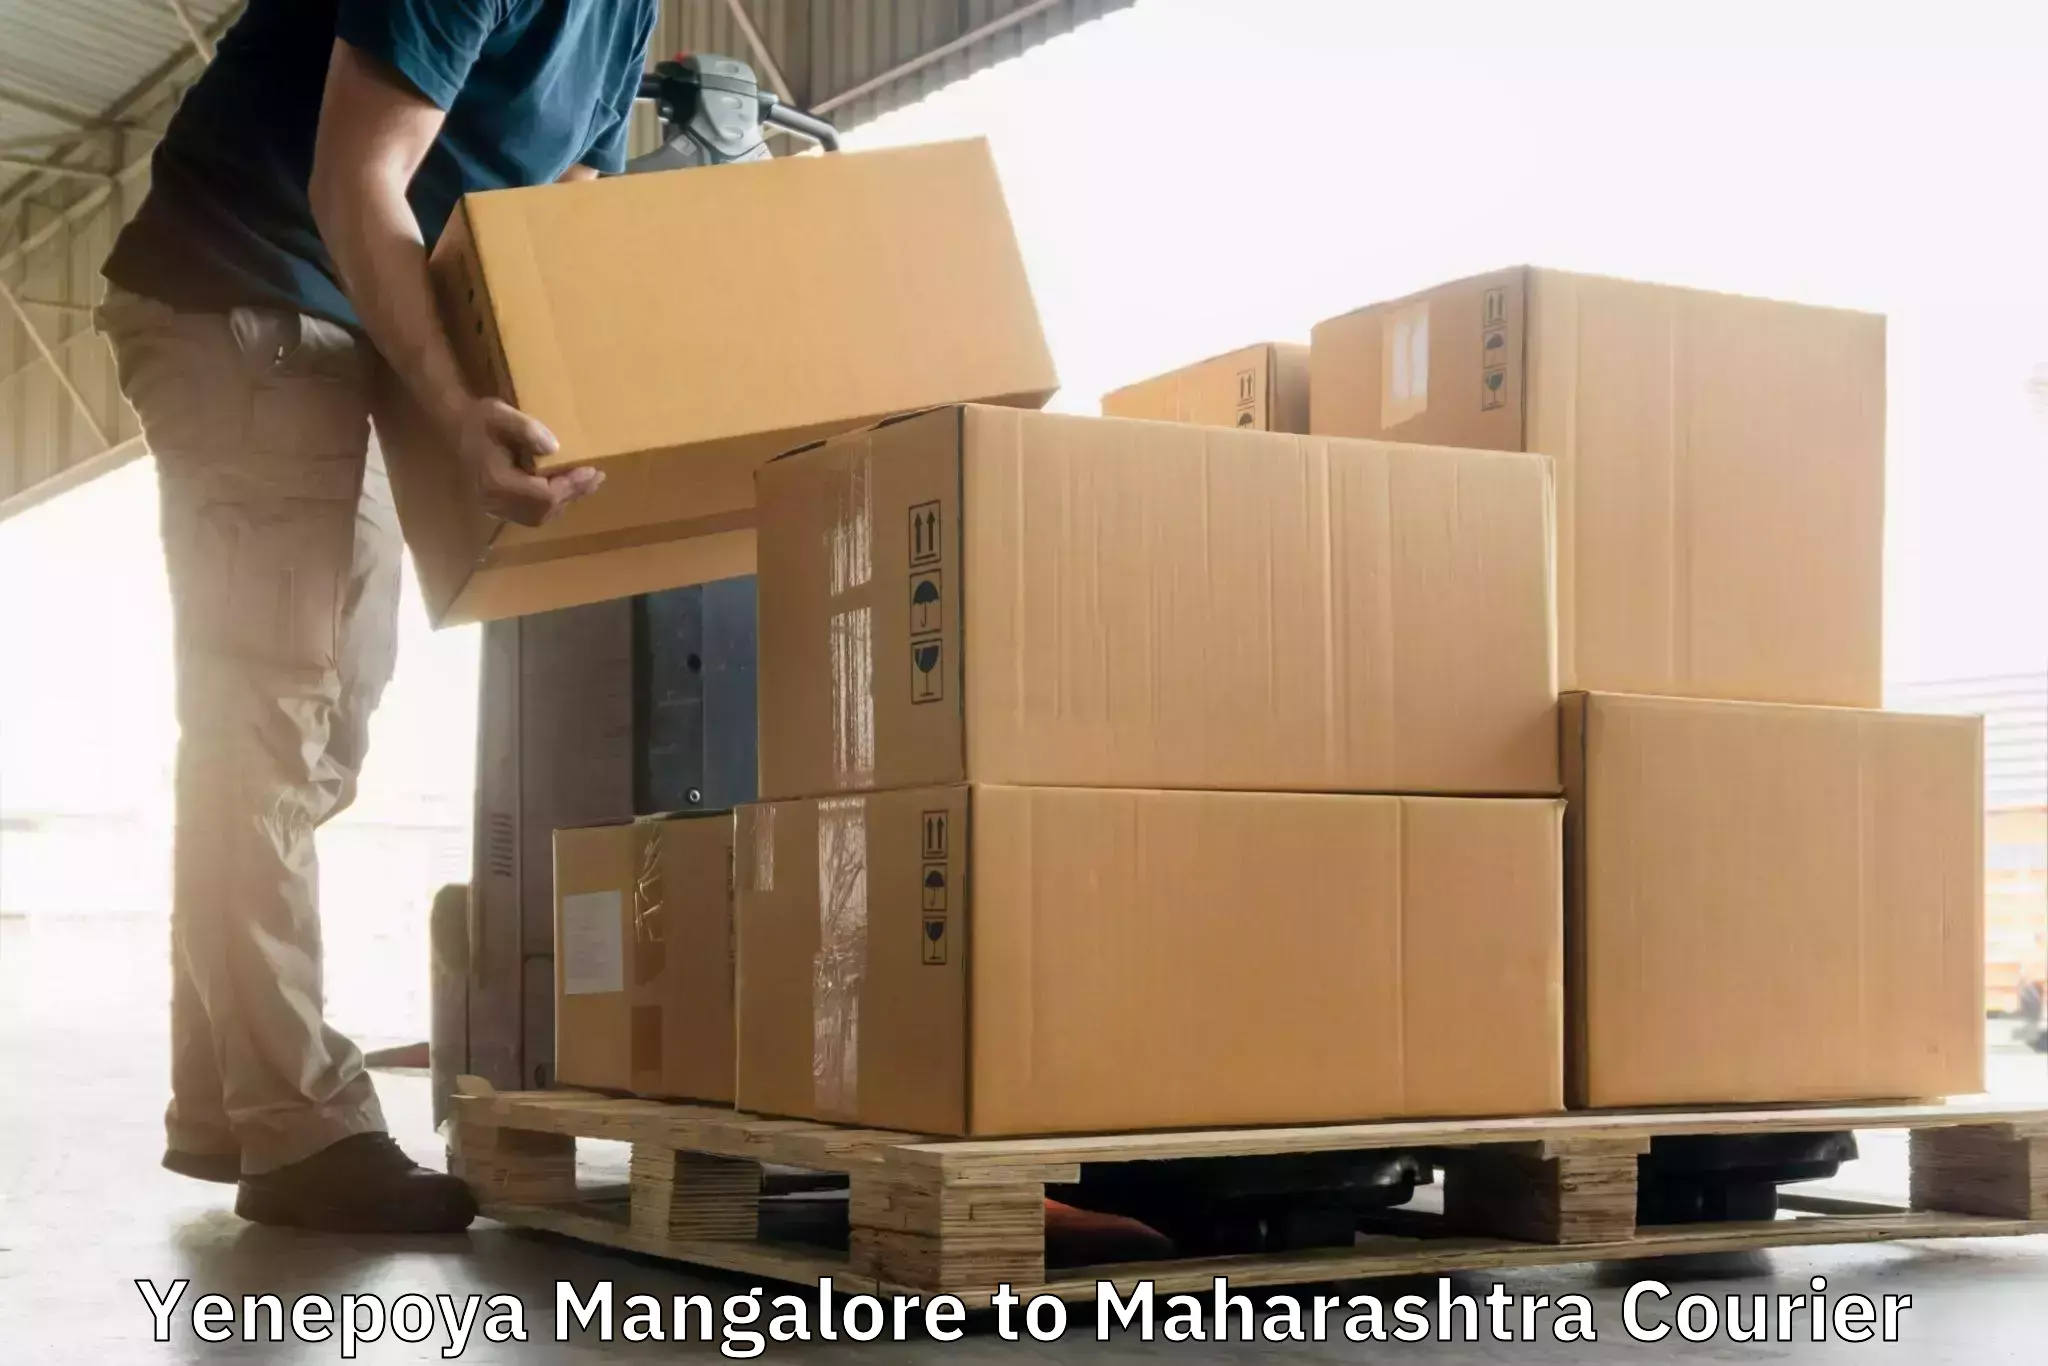 Express delivery solutions Yenepoya Mangalore to Maharashtra